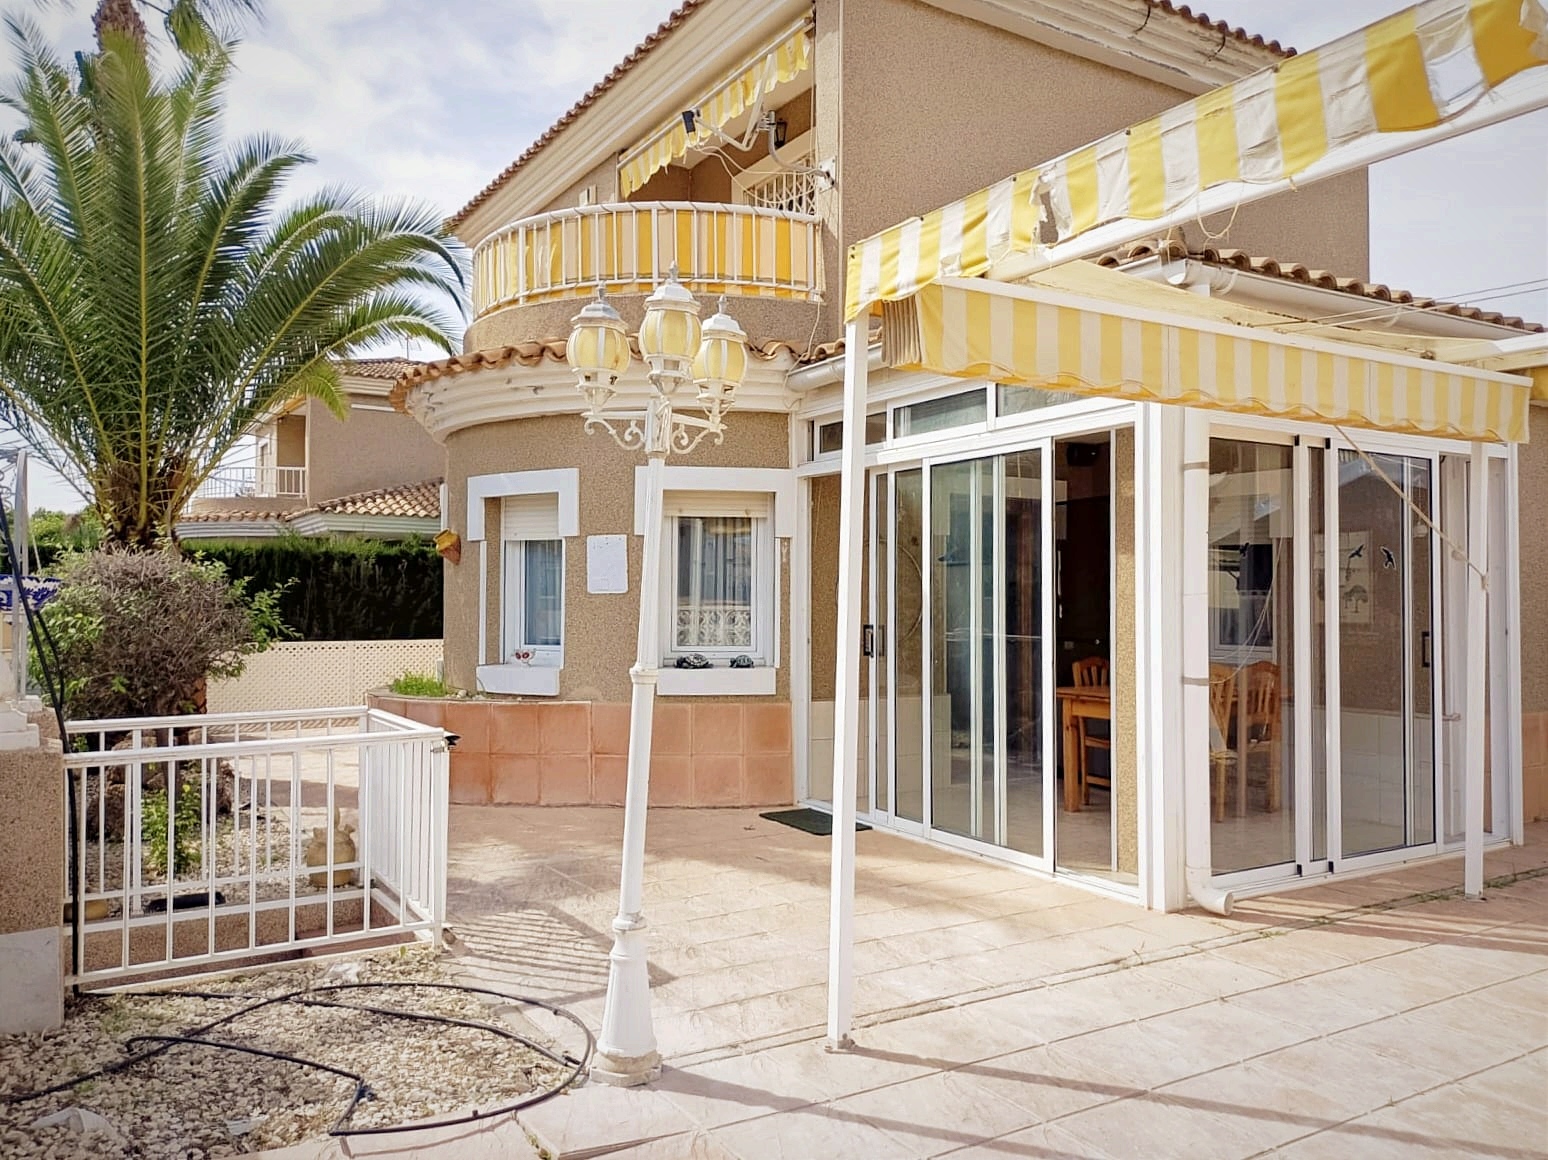 Mediterranean detached villa for sale in Los Altos, Orihuela Costa.